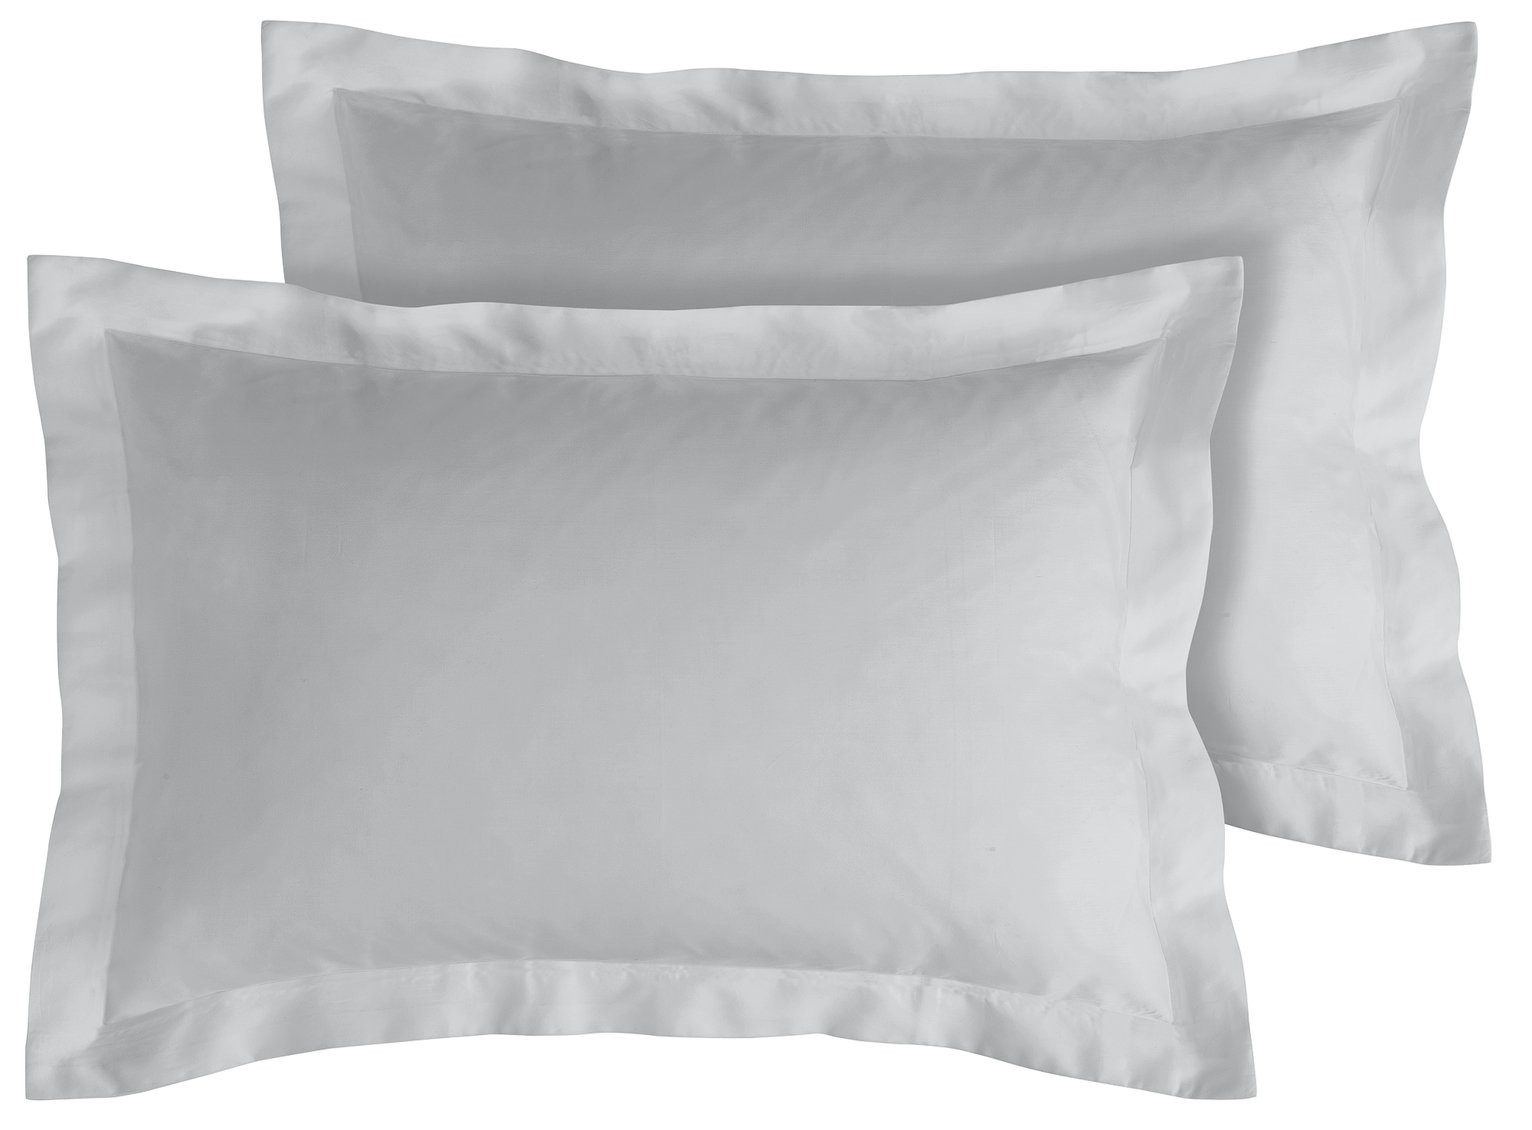 Habitat 400TC Egyptian Cotton Oxford Pillowcase Pair - Grey